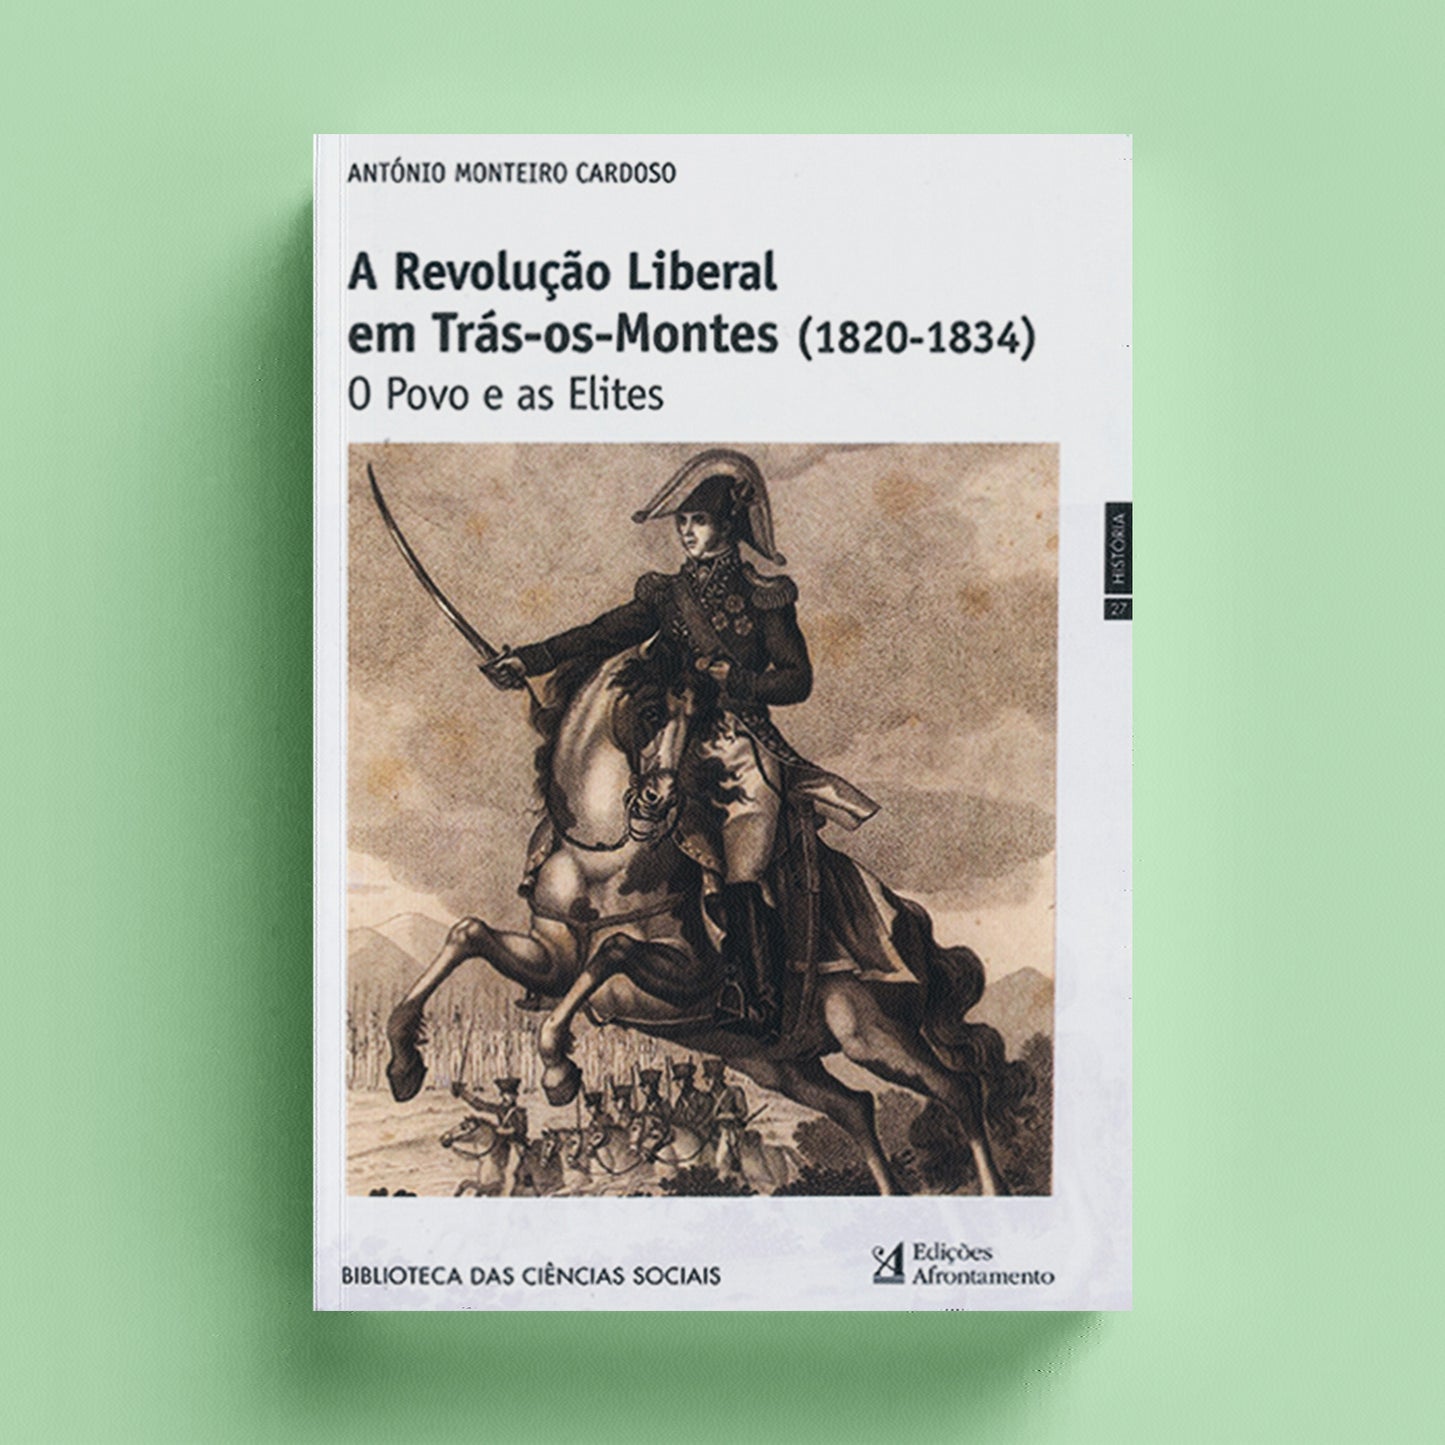 A Revolução Liberal em Trás-os-Montes (1820-1834)